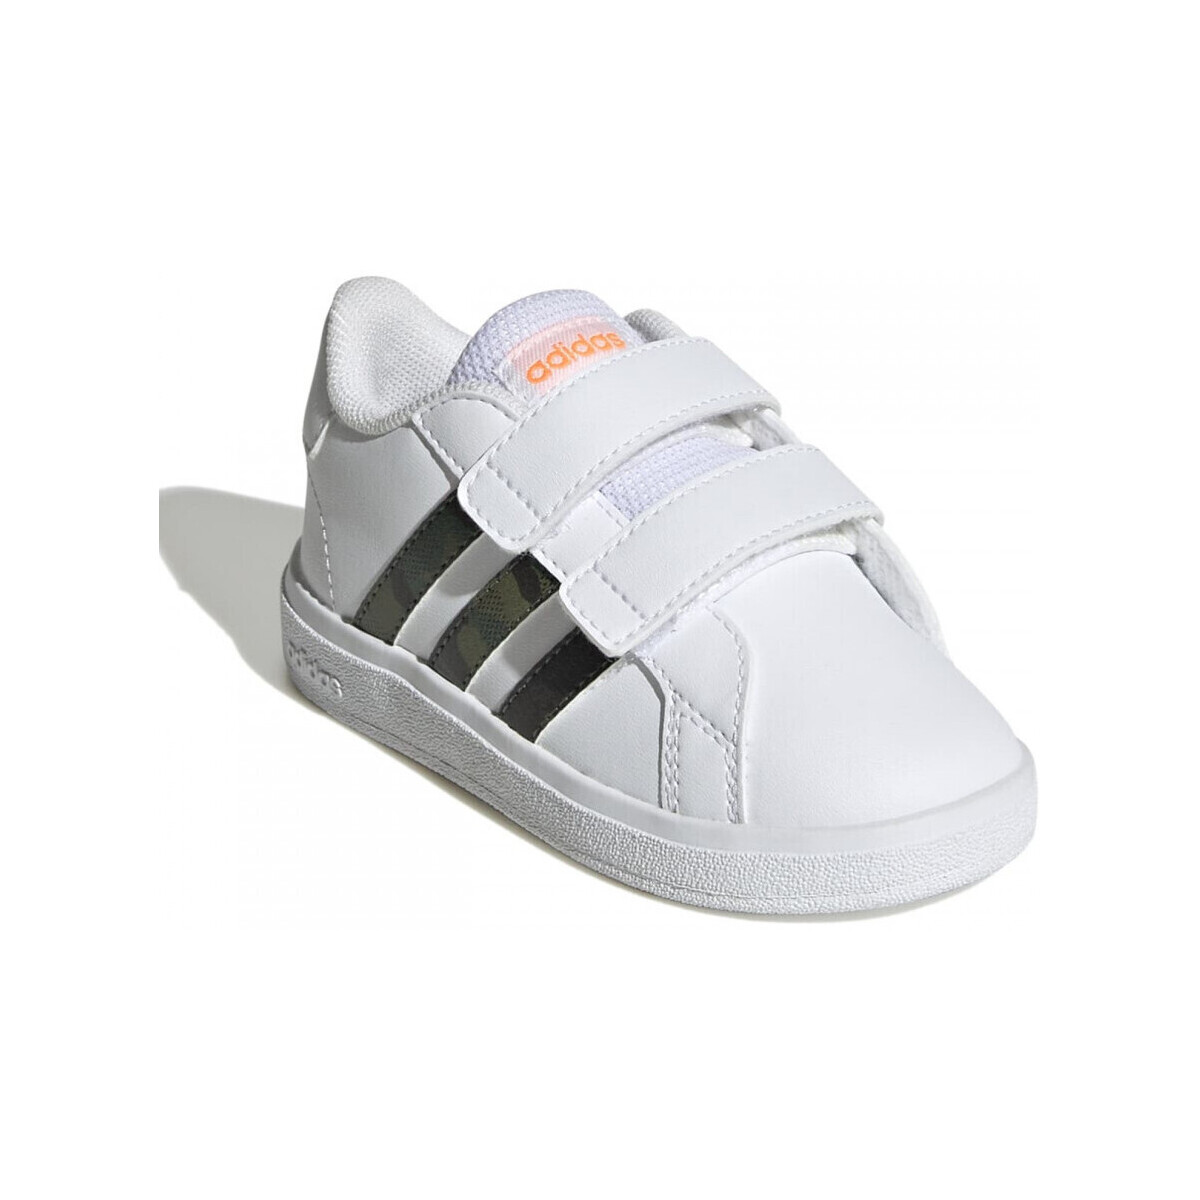 Sapatos Criança Sapatilhas adidas Originals Grand court 2.0 cf i Branco